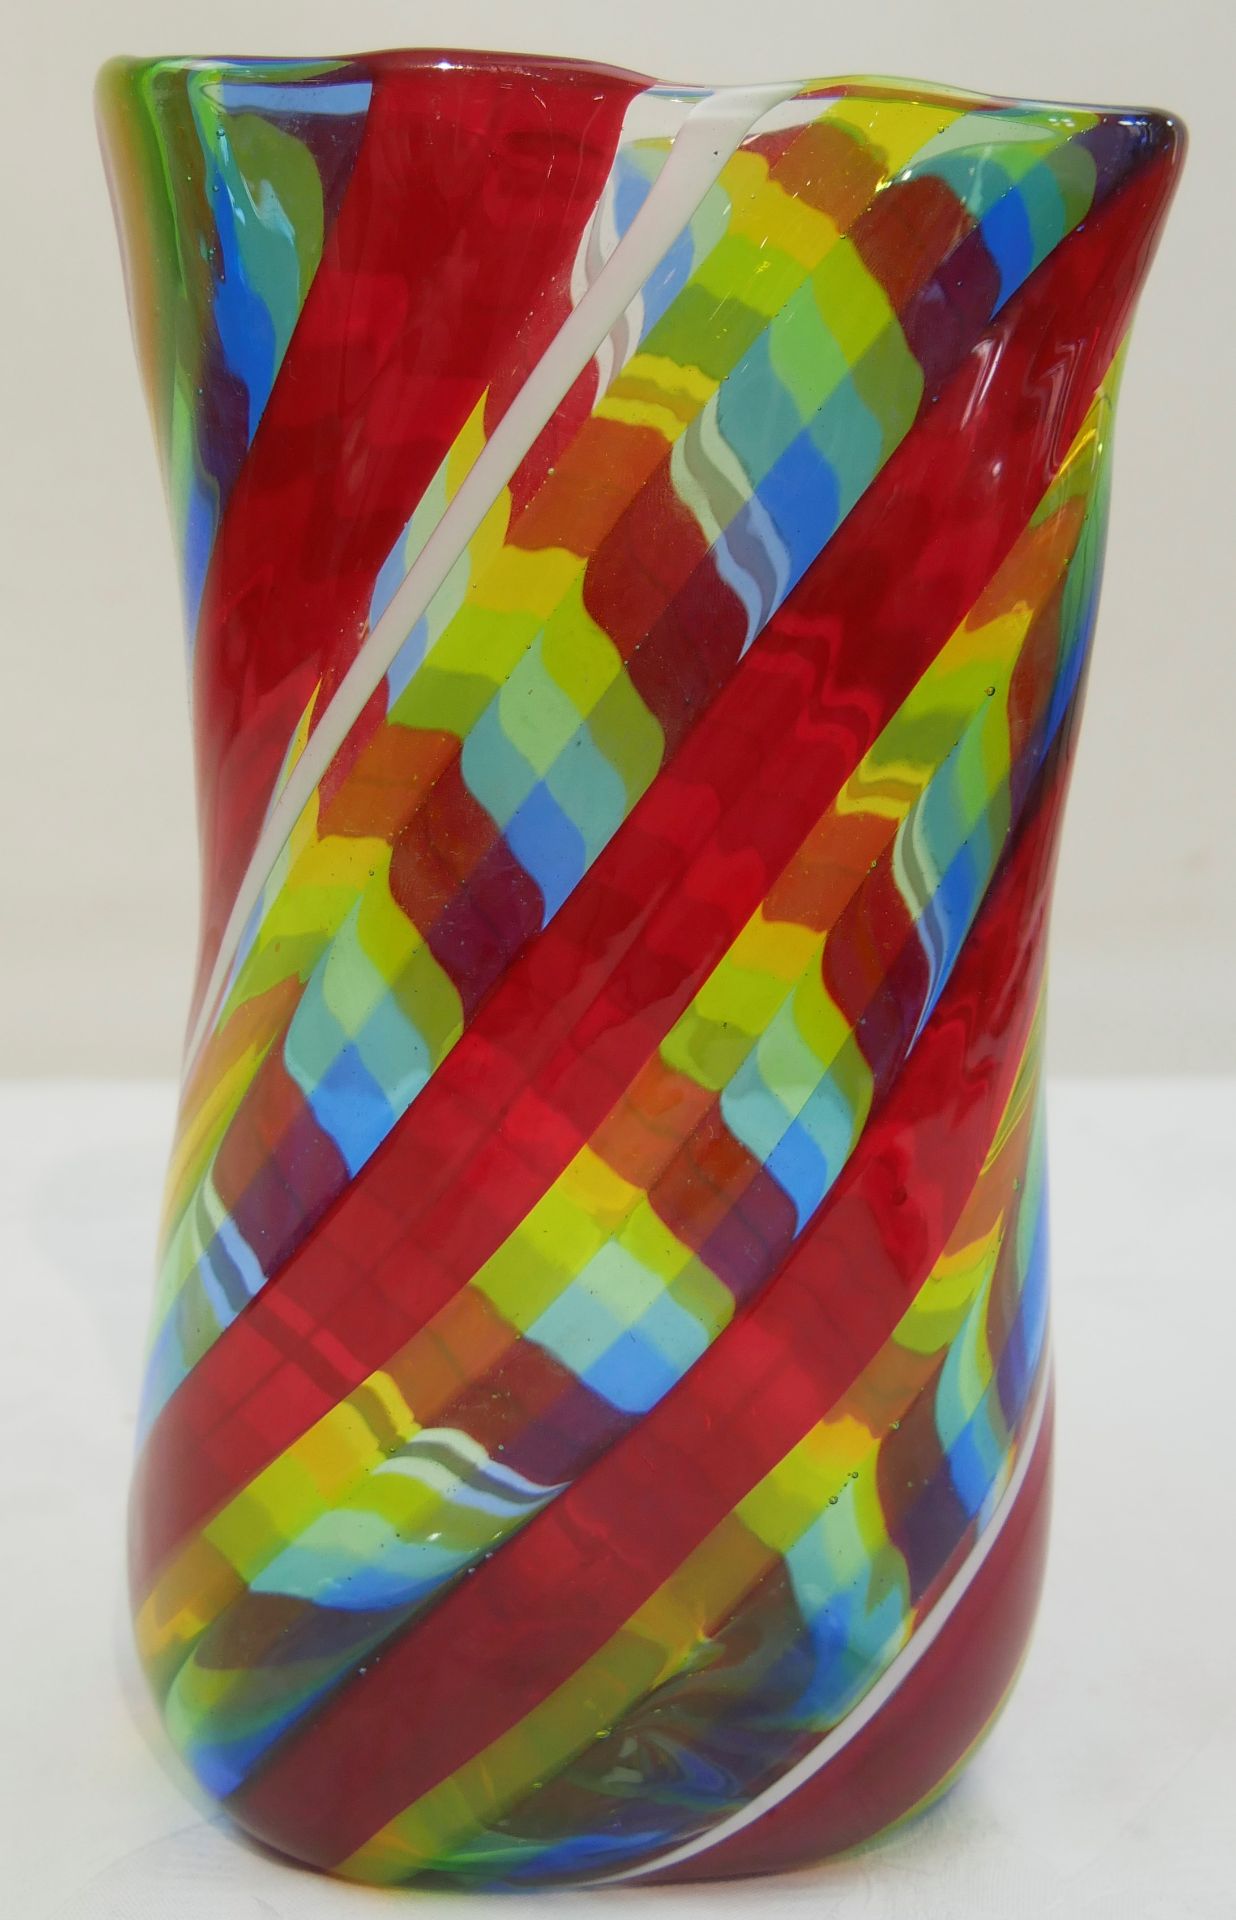 Murano, wohl Fulvio Bianloni zugeschrieben. 5-farben Glasvase, Fasce Ritork-Vase. Abriß am Stand